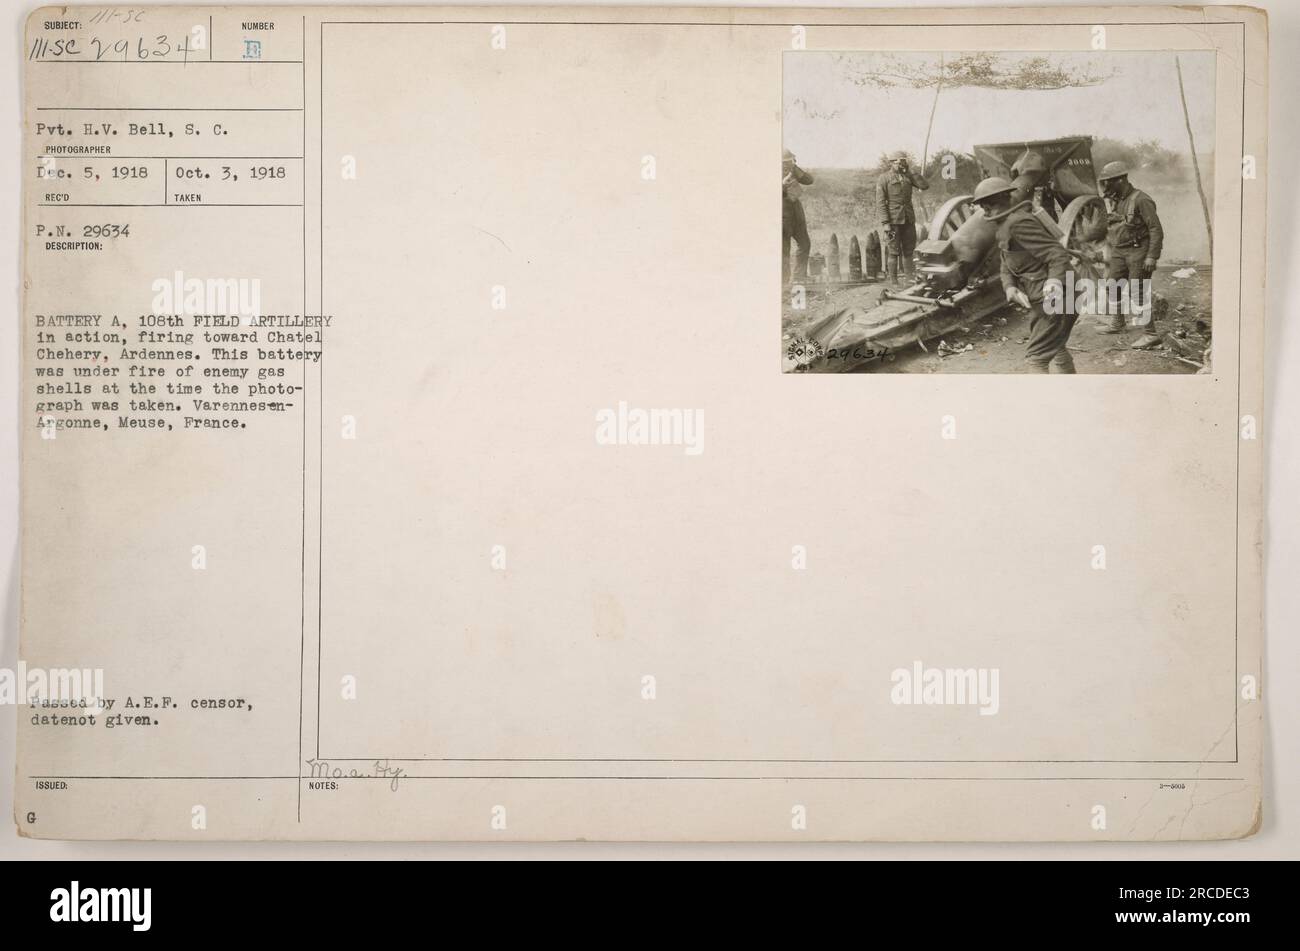 Batterie A, 108th Field Artillery en action, tirant vers Chatel Chehery, Ardennes. La photo représente Pvt. H.V. Bell du signal corps capturant l'instant le 5 décembre 1918. À l'époque, la batterie était sous le feu d'obus à gaz ennemis. La photographie a été prise à Varennes-en-Argonne, Meuse, France, et a été approuvée par le censeur de l'A.E.F. ». Banque D'Images